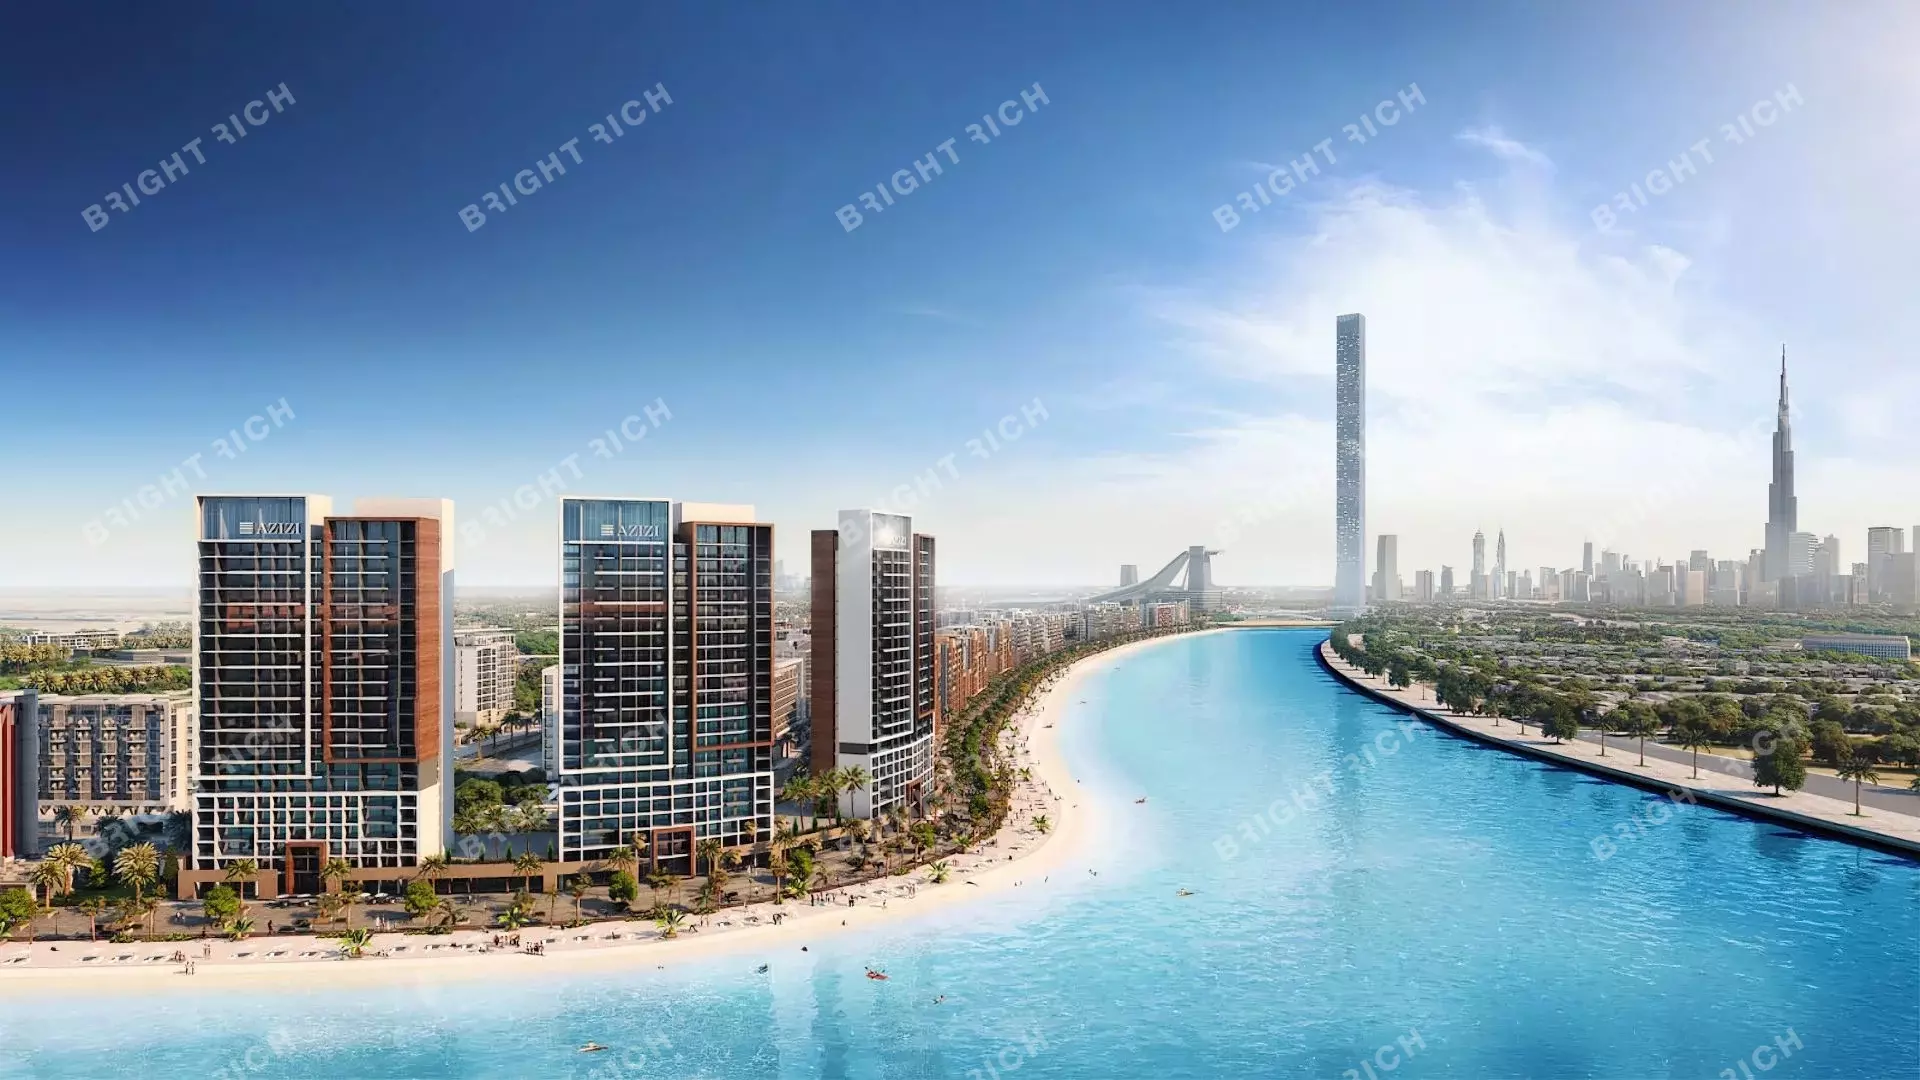 Azizi Riviera Building 31, apart complex in Dubai - 0